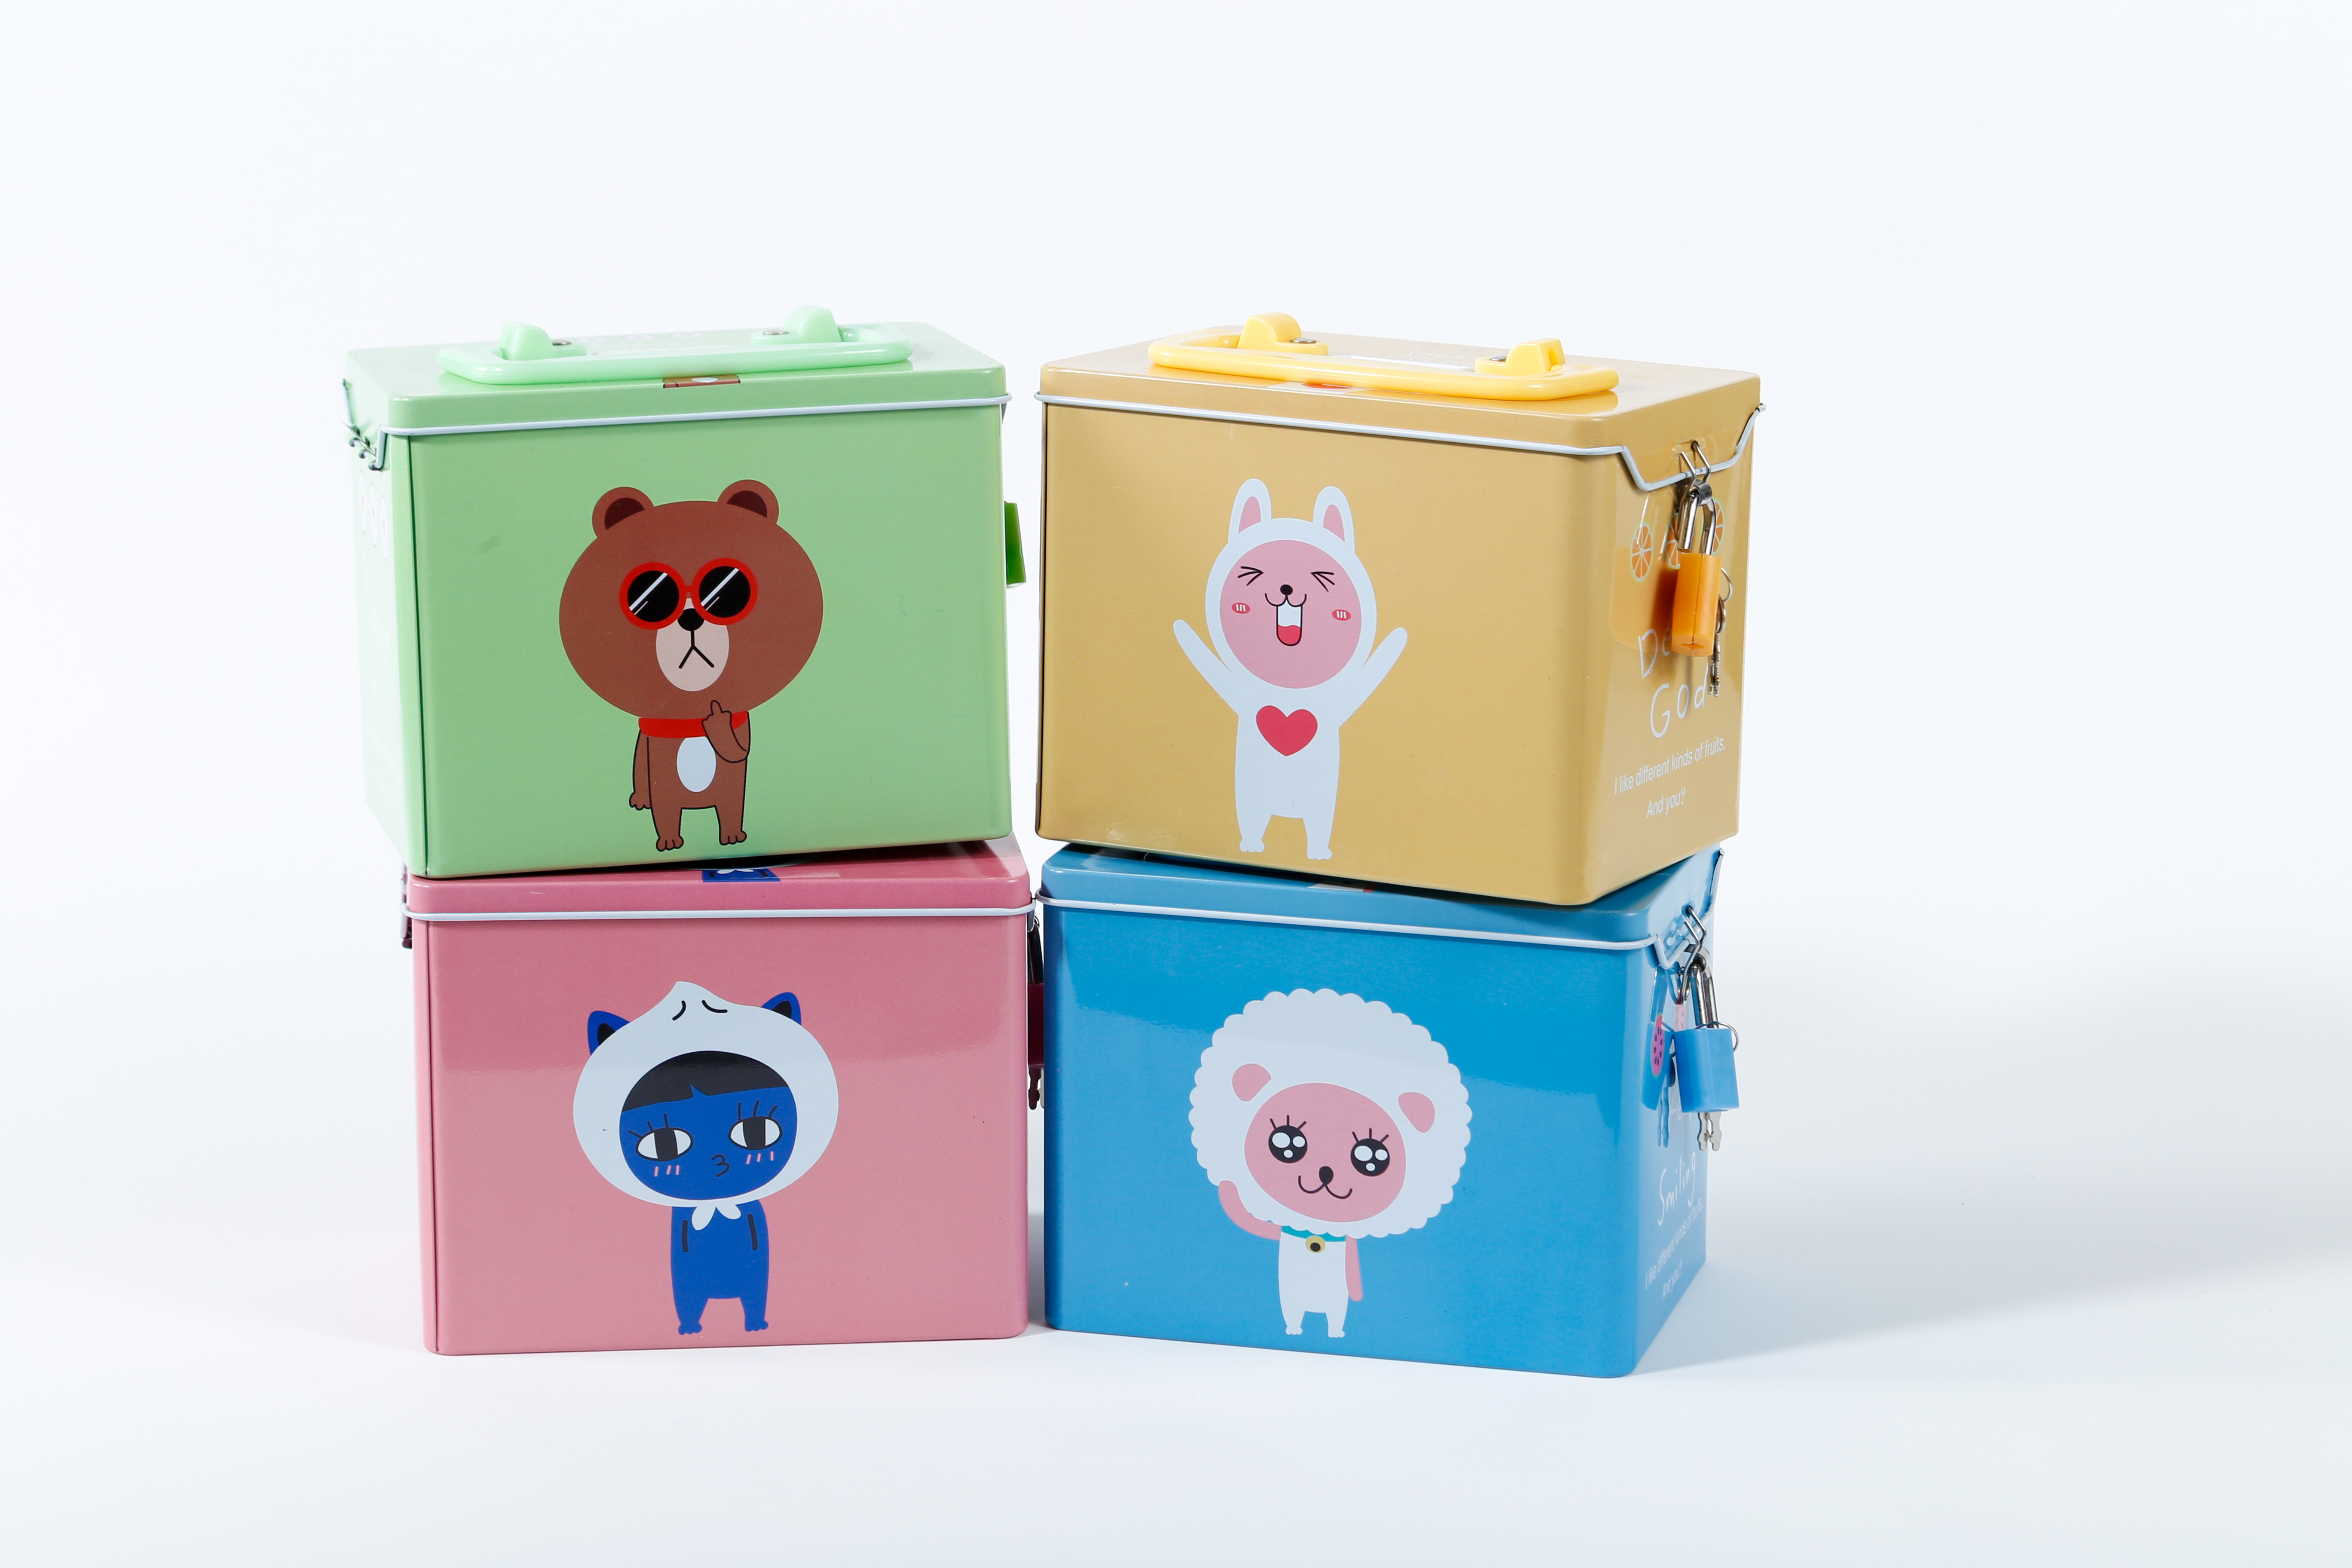  新品卡通玩具收納盒兒童禮物馬口鐵罐創意禮品存錢儲蓄罐